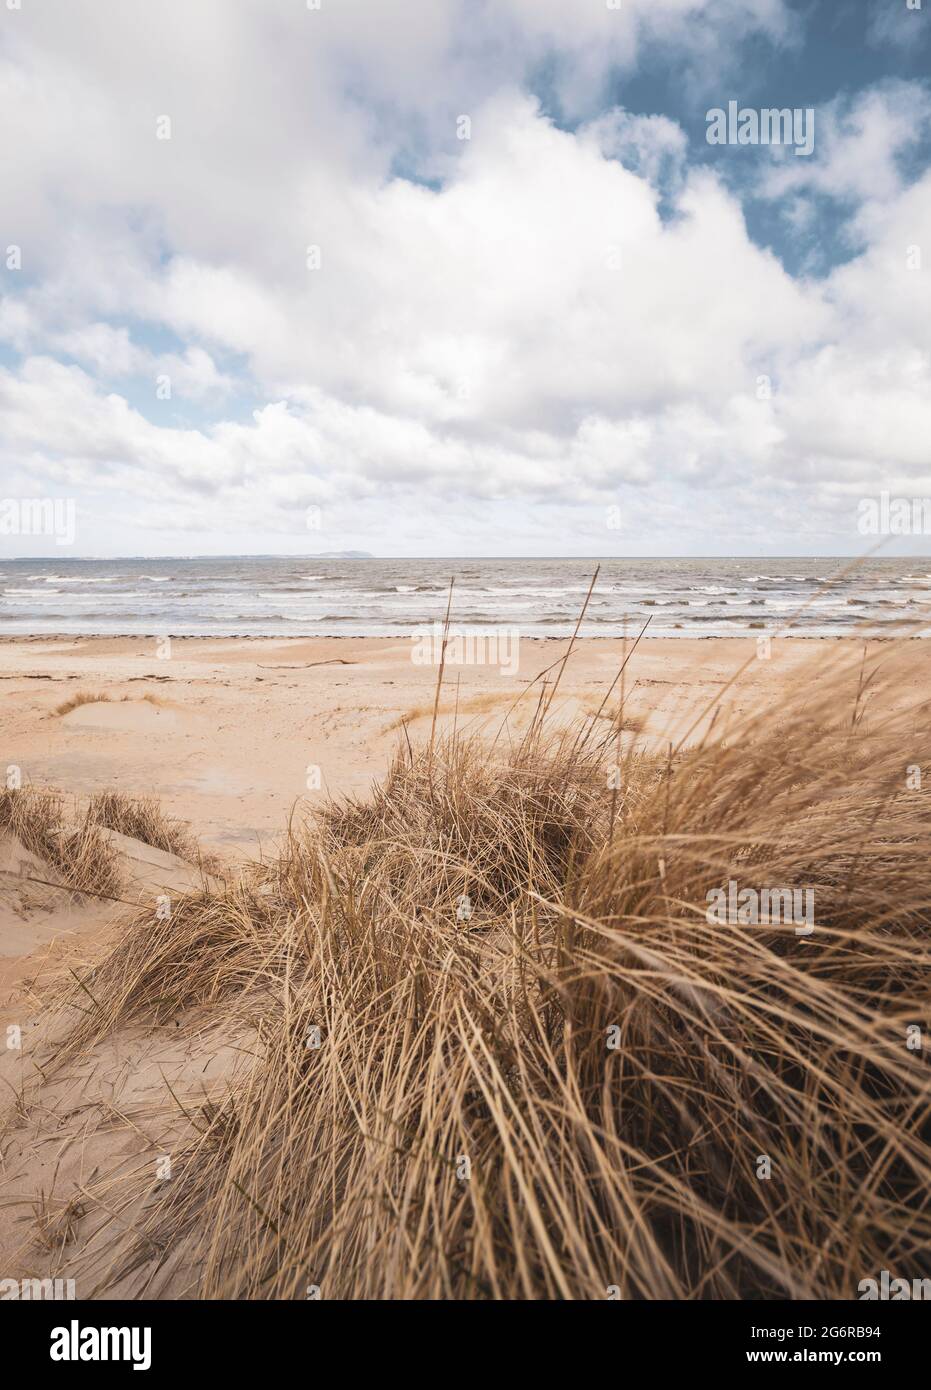 Grassy sand dunes at Swedish beach. Stock Photo